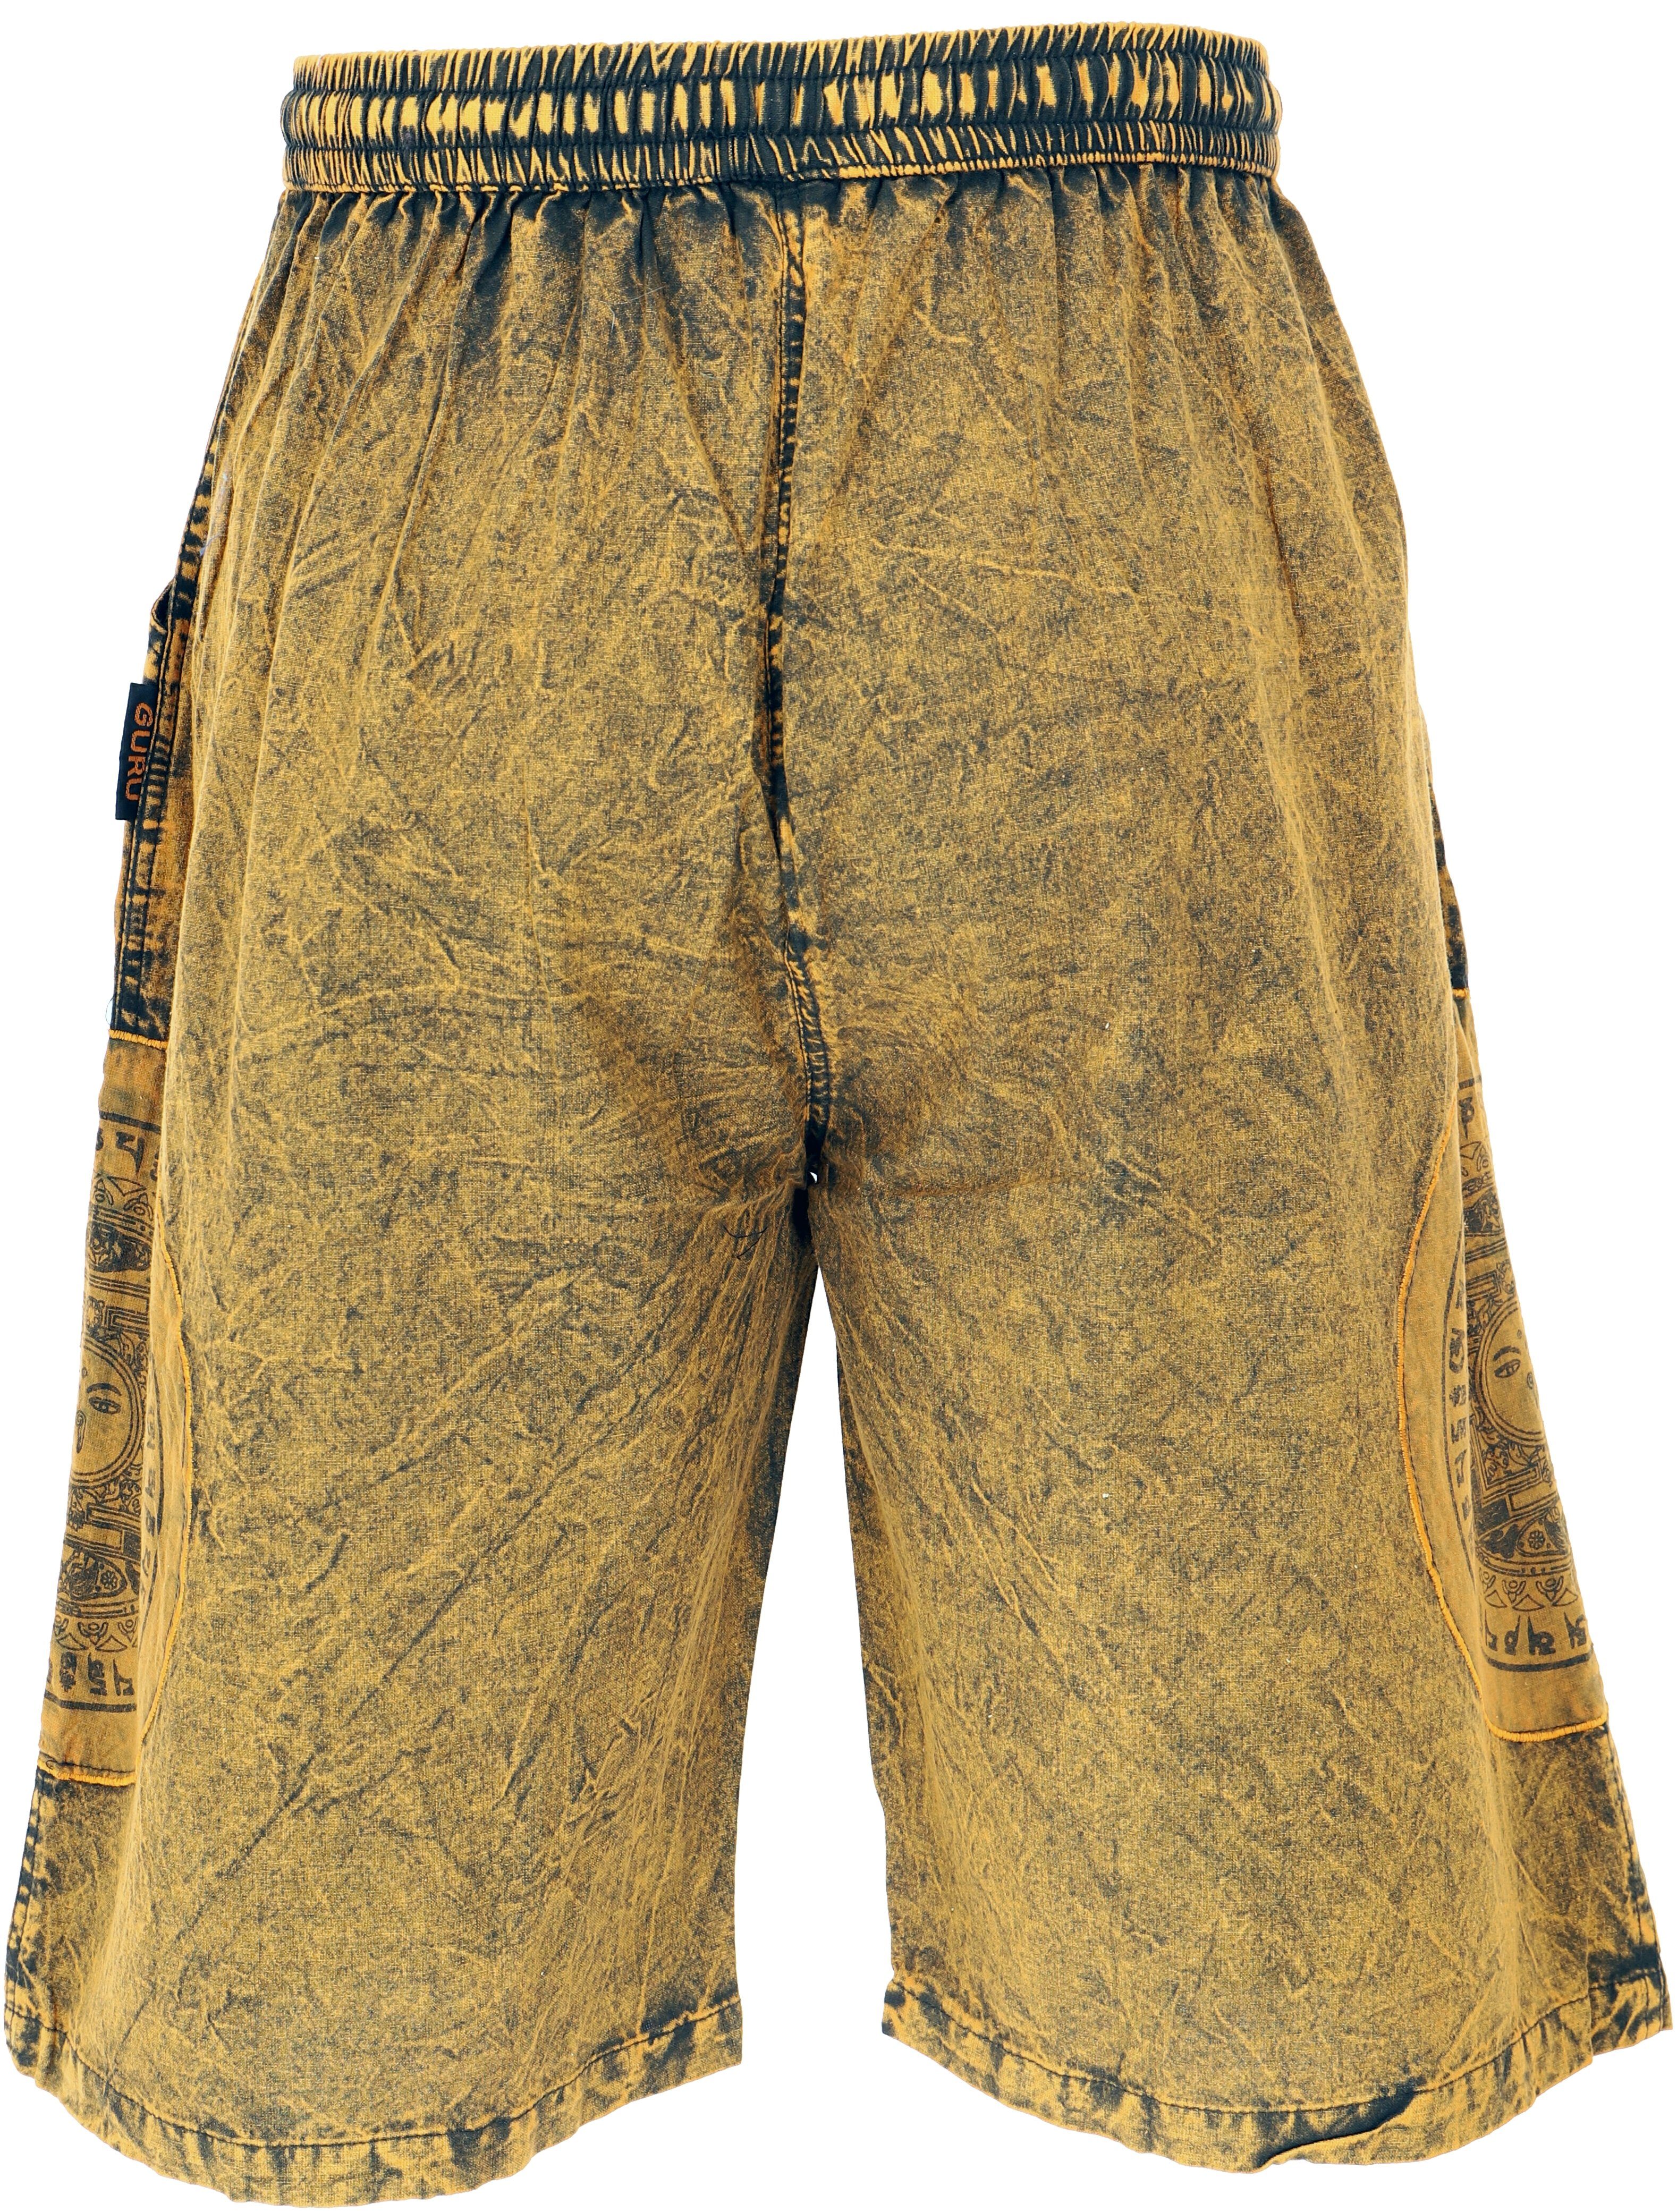 Guru-Shop Relaxhose Ethno Shorts.. Hippie, Stonwasch gelb Patchwork Bekleidung Yogashorts, Ethno alternative Style